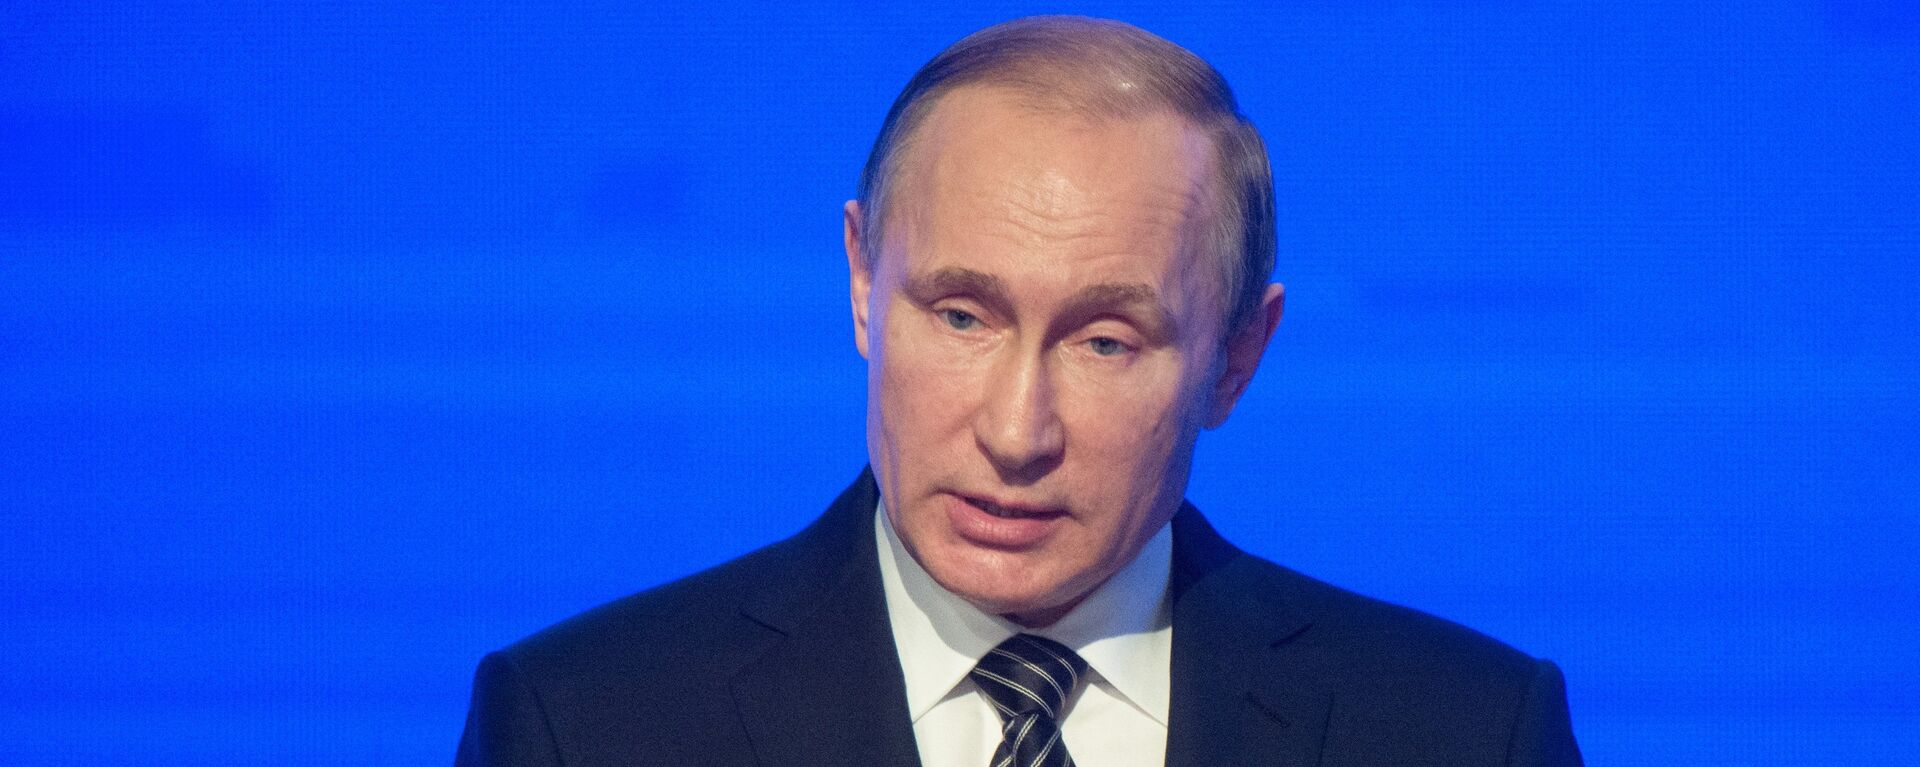 Президент России Владимир Путин - Sputnik Латвия, 1920, 30.06.2016